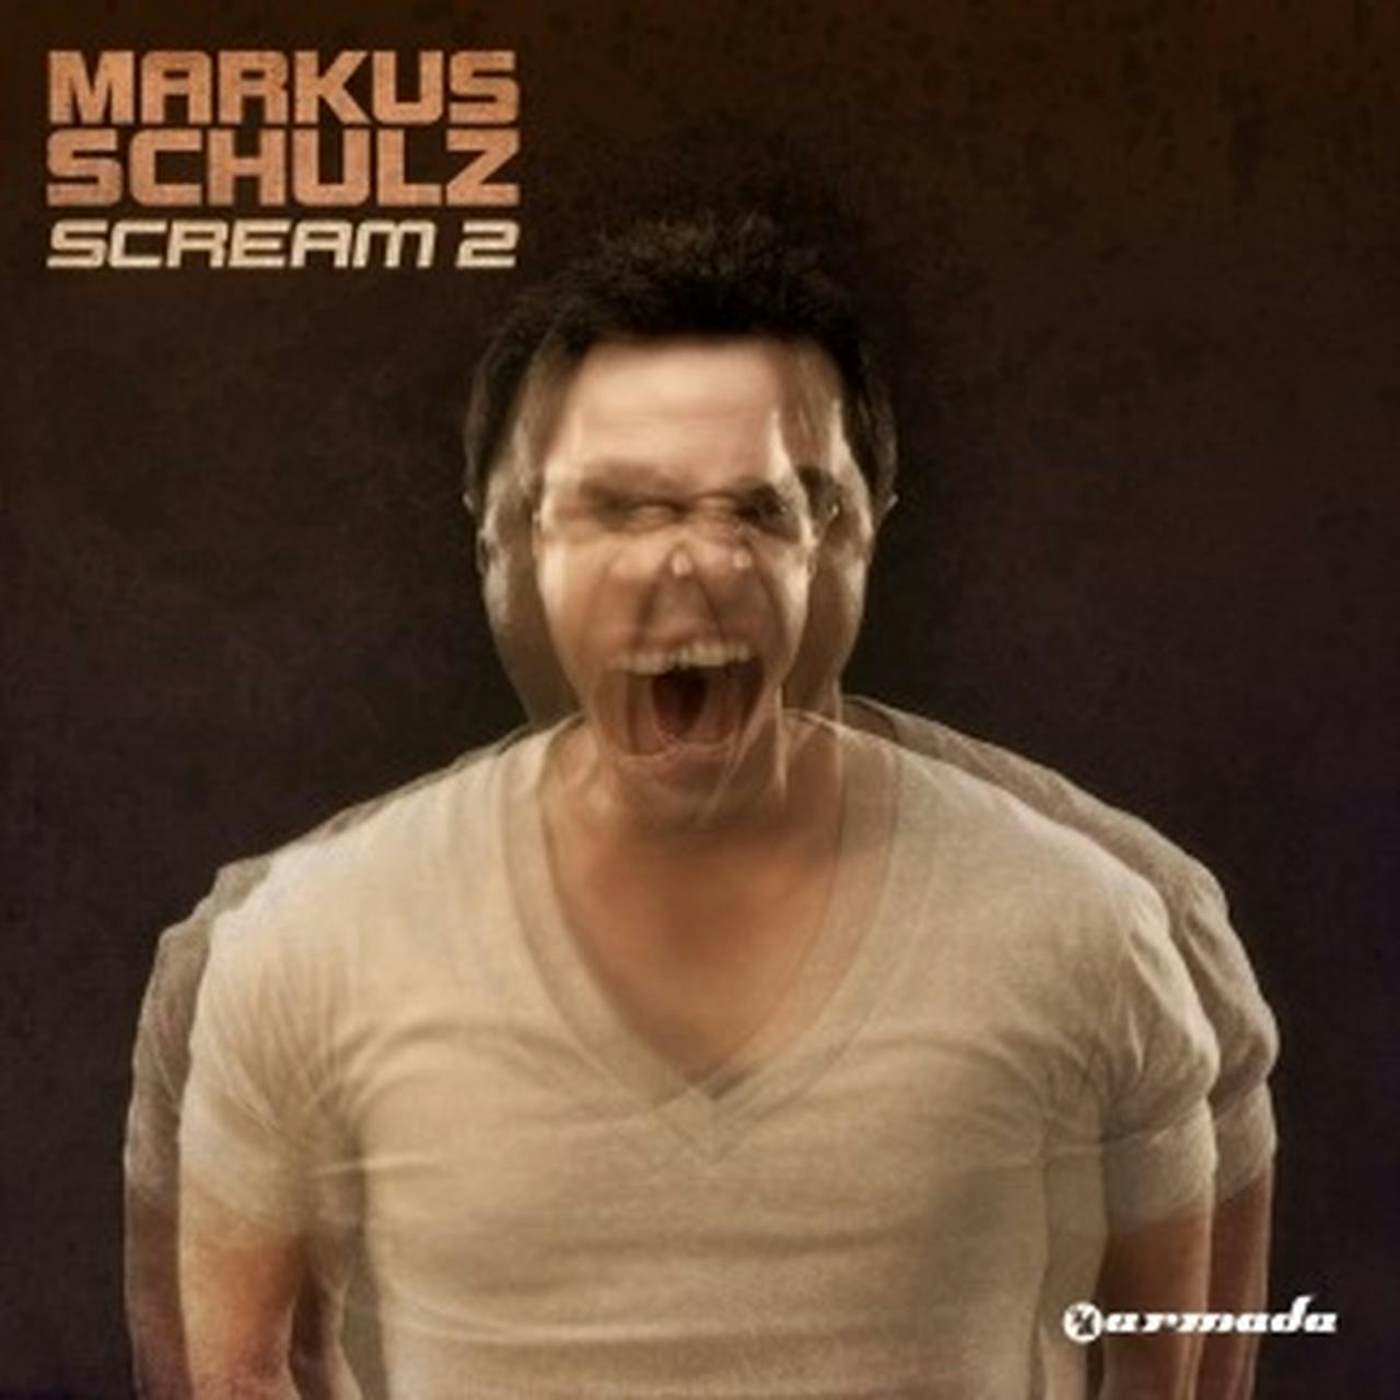 Markus Schulz Scream 2 CD